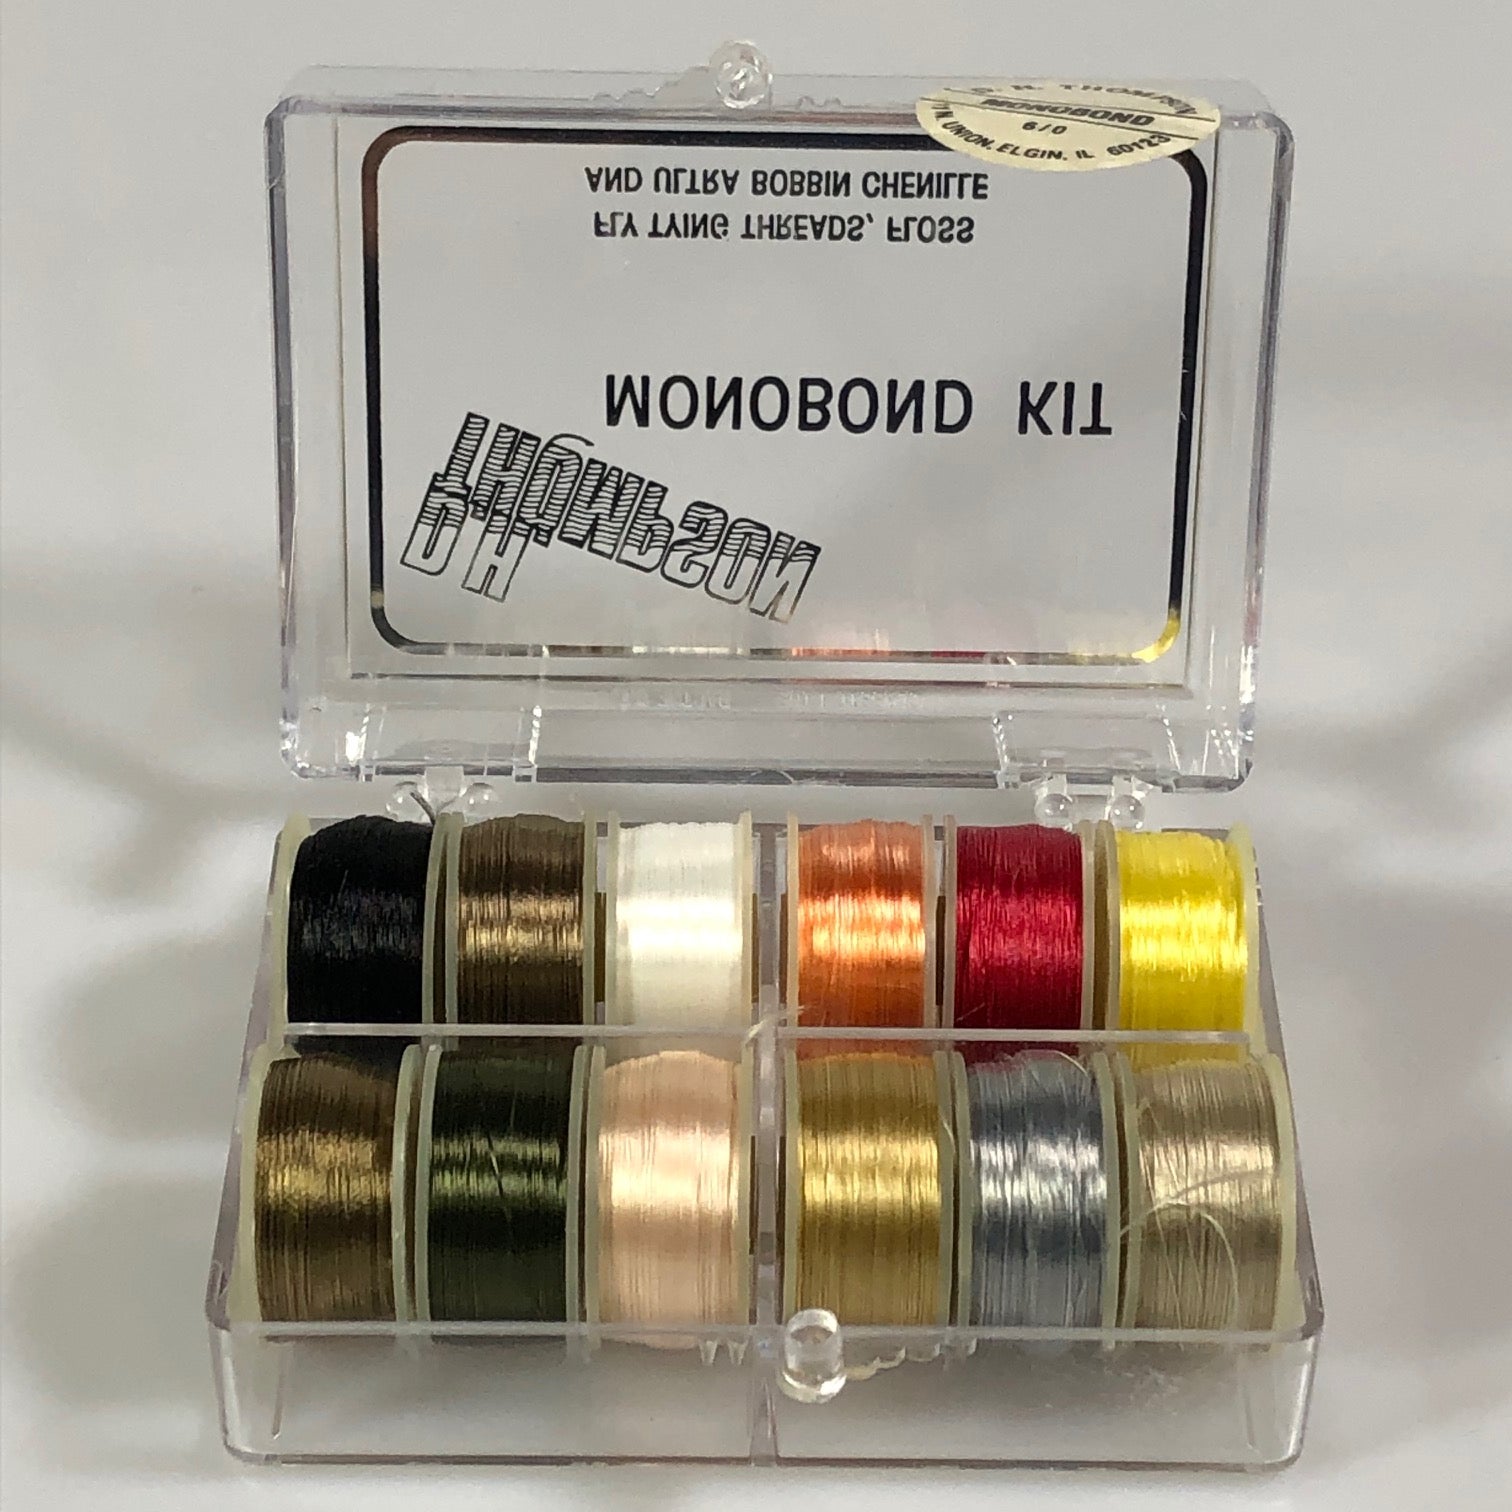 D.H. Thompson Monobond Kit